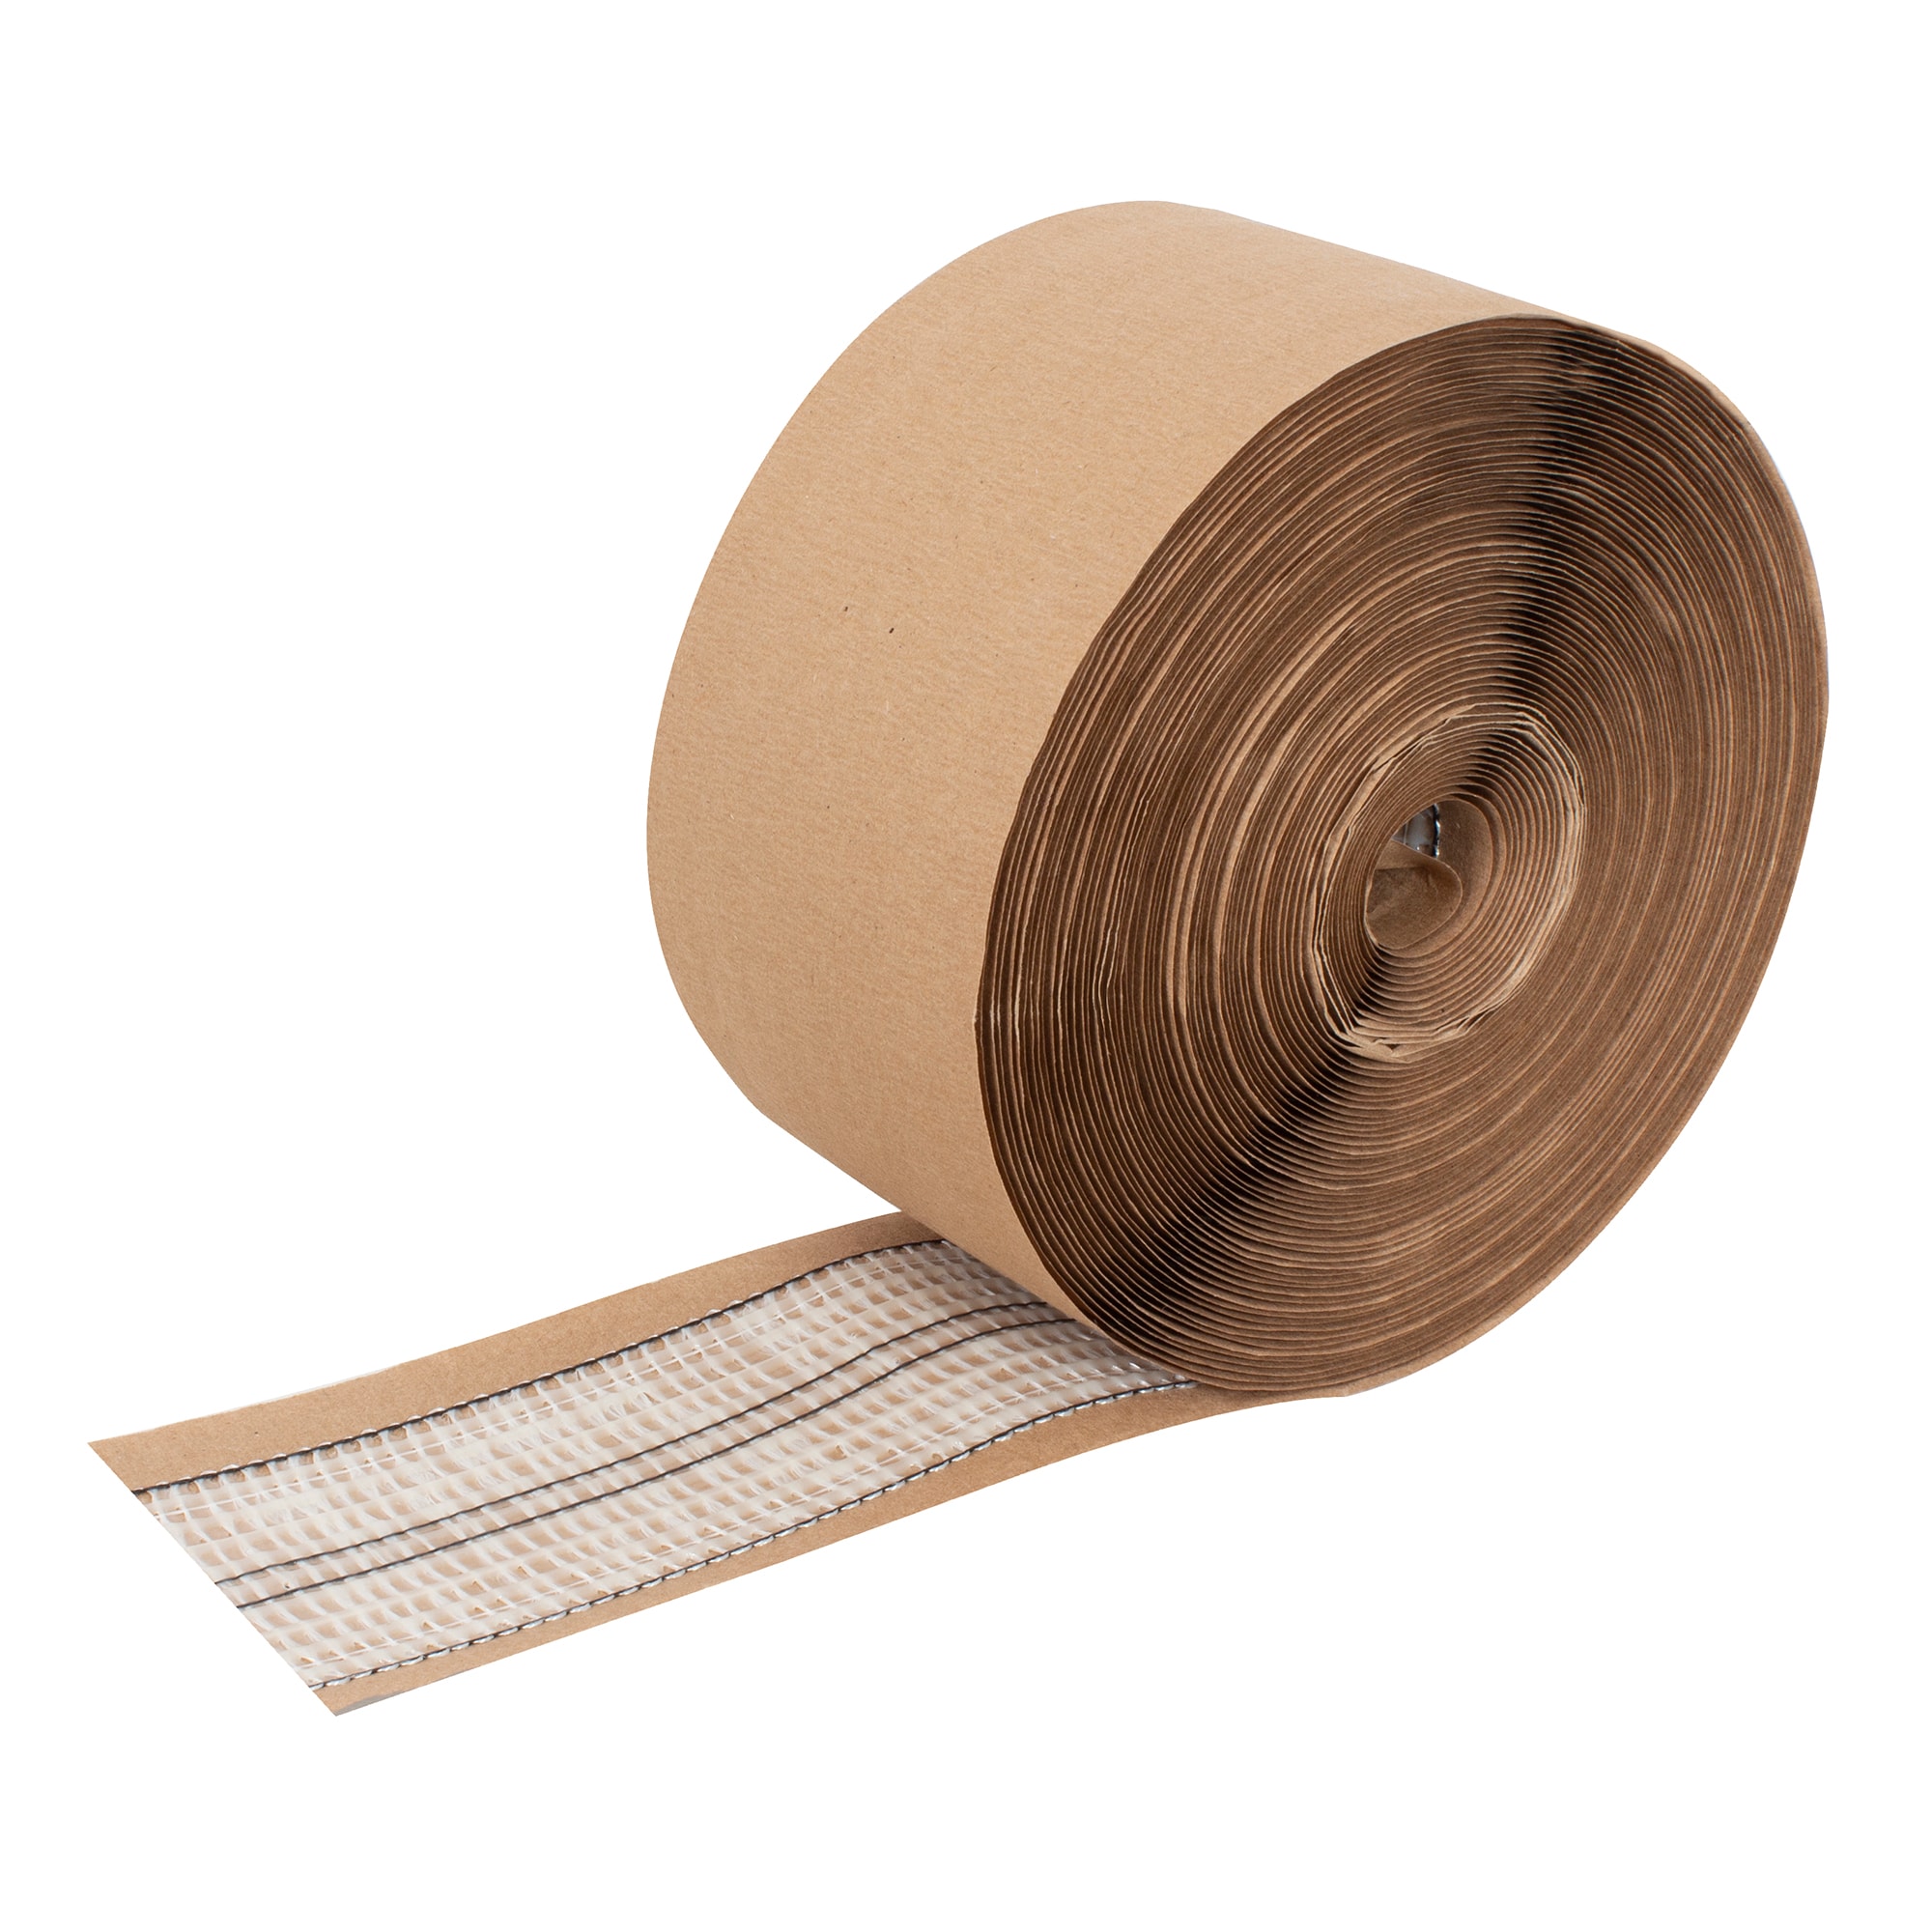 ROBERTS Indoor Pressure Sensitive 15 ft. Carpet Seaming Tape Roll